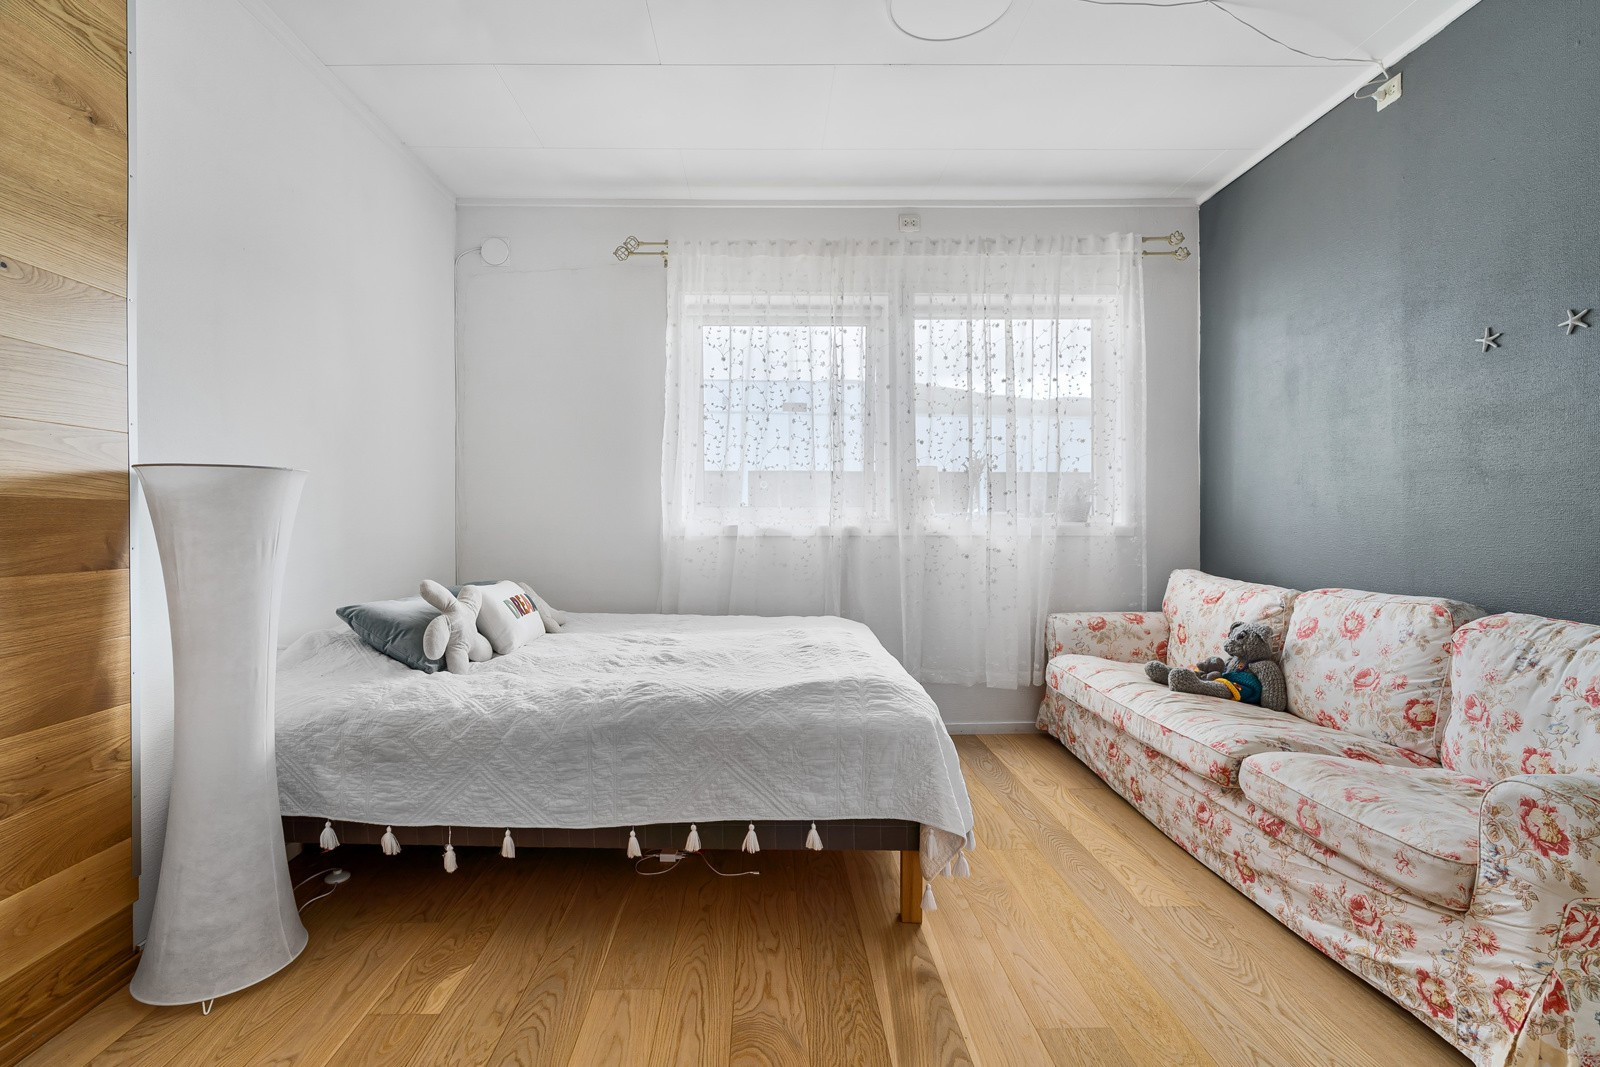 Boligens første soverom er romslig med god plass til dobbeltseng og klesoppbevaring